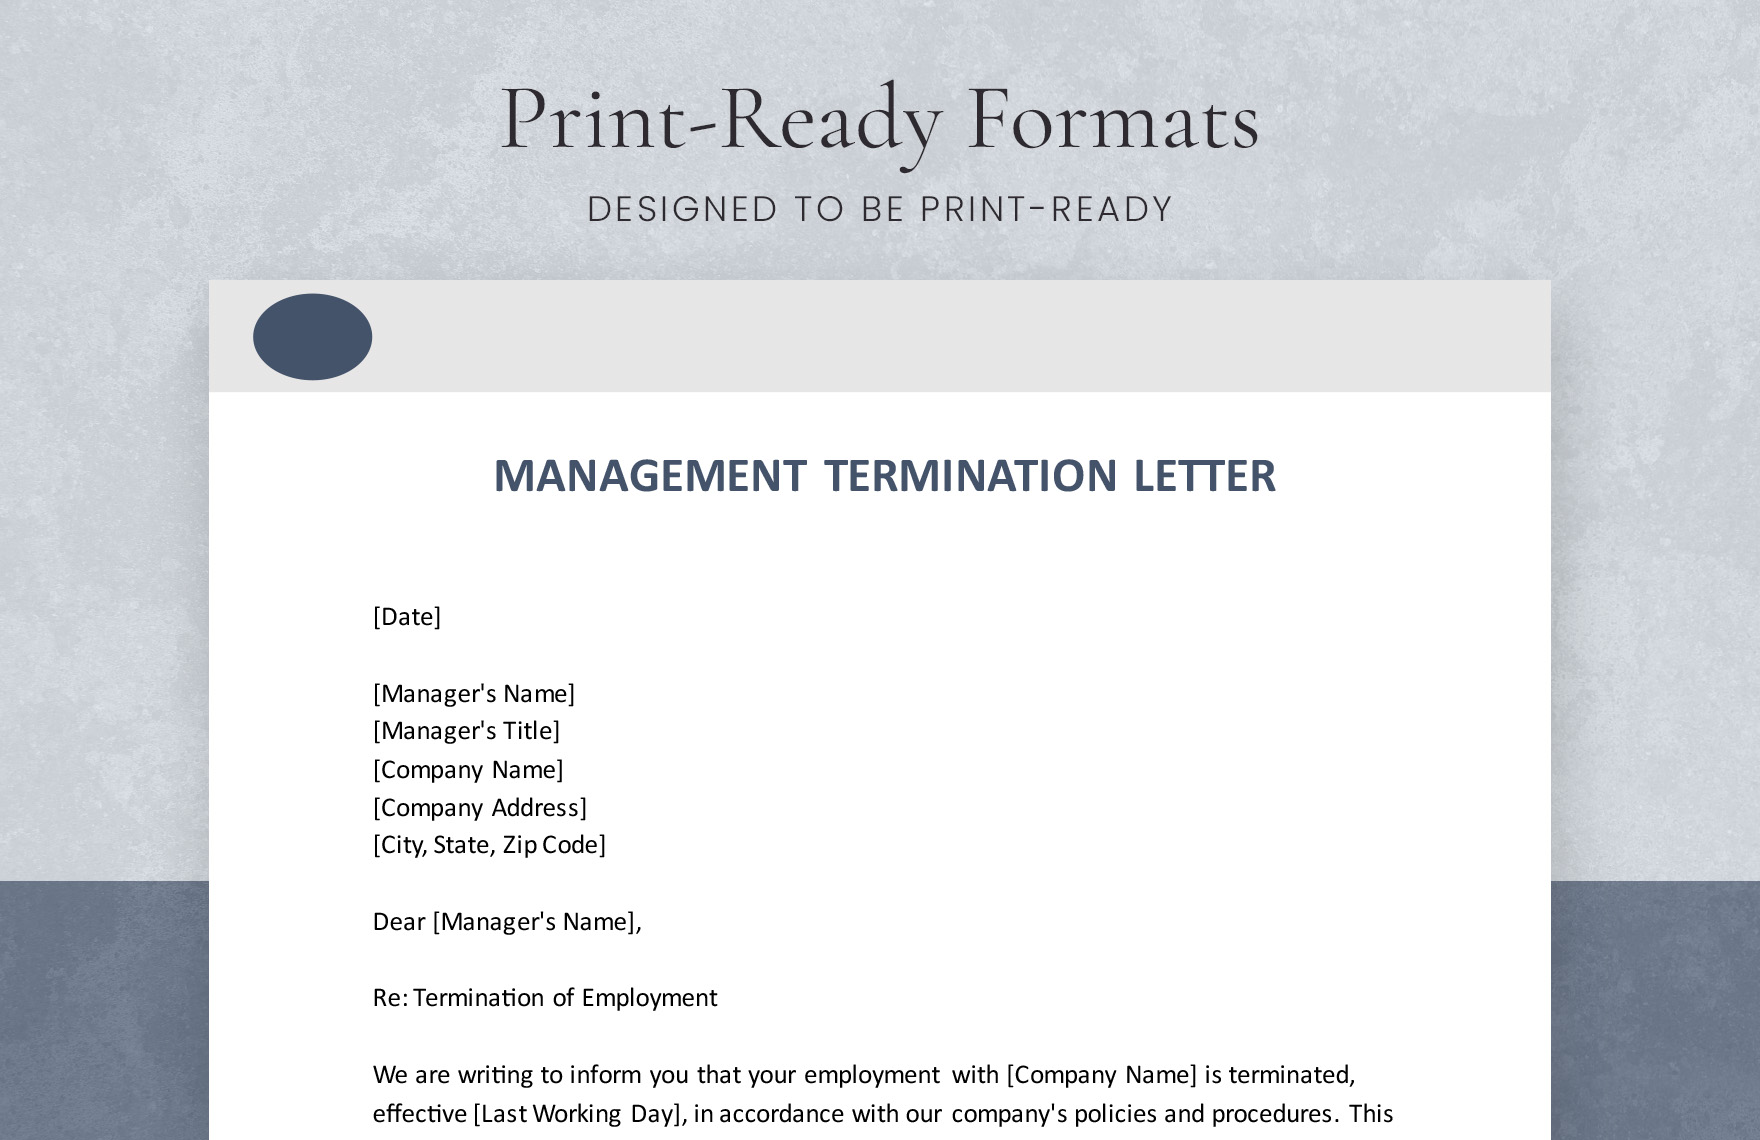 Management Termination Letter